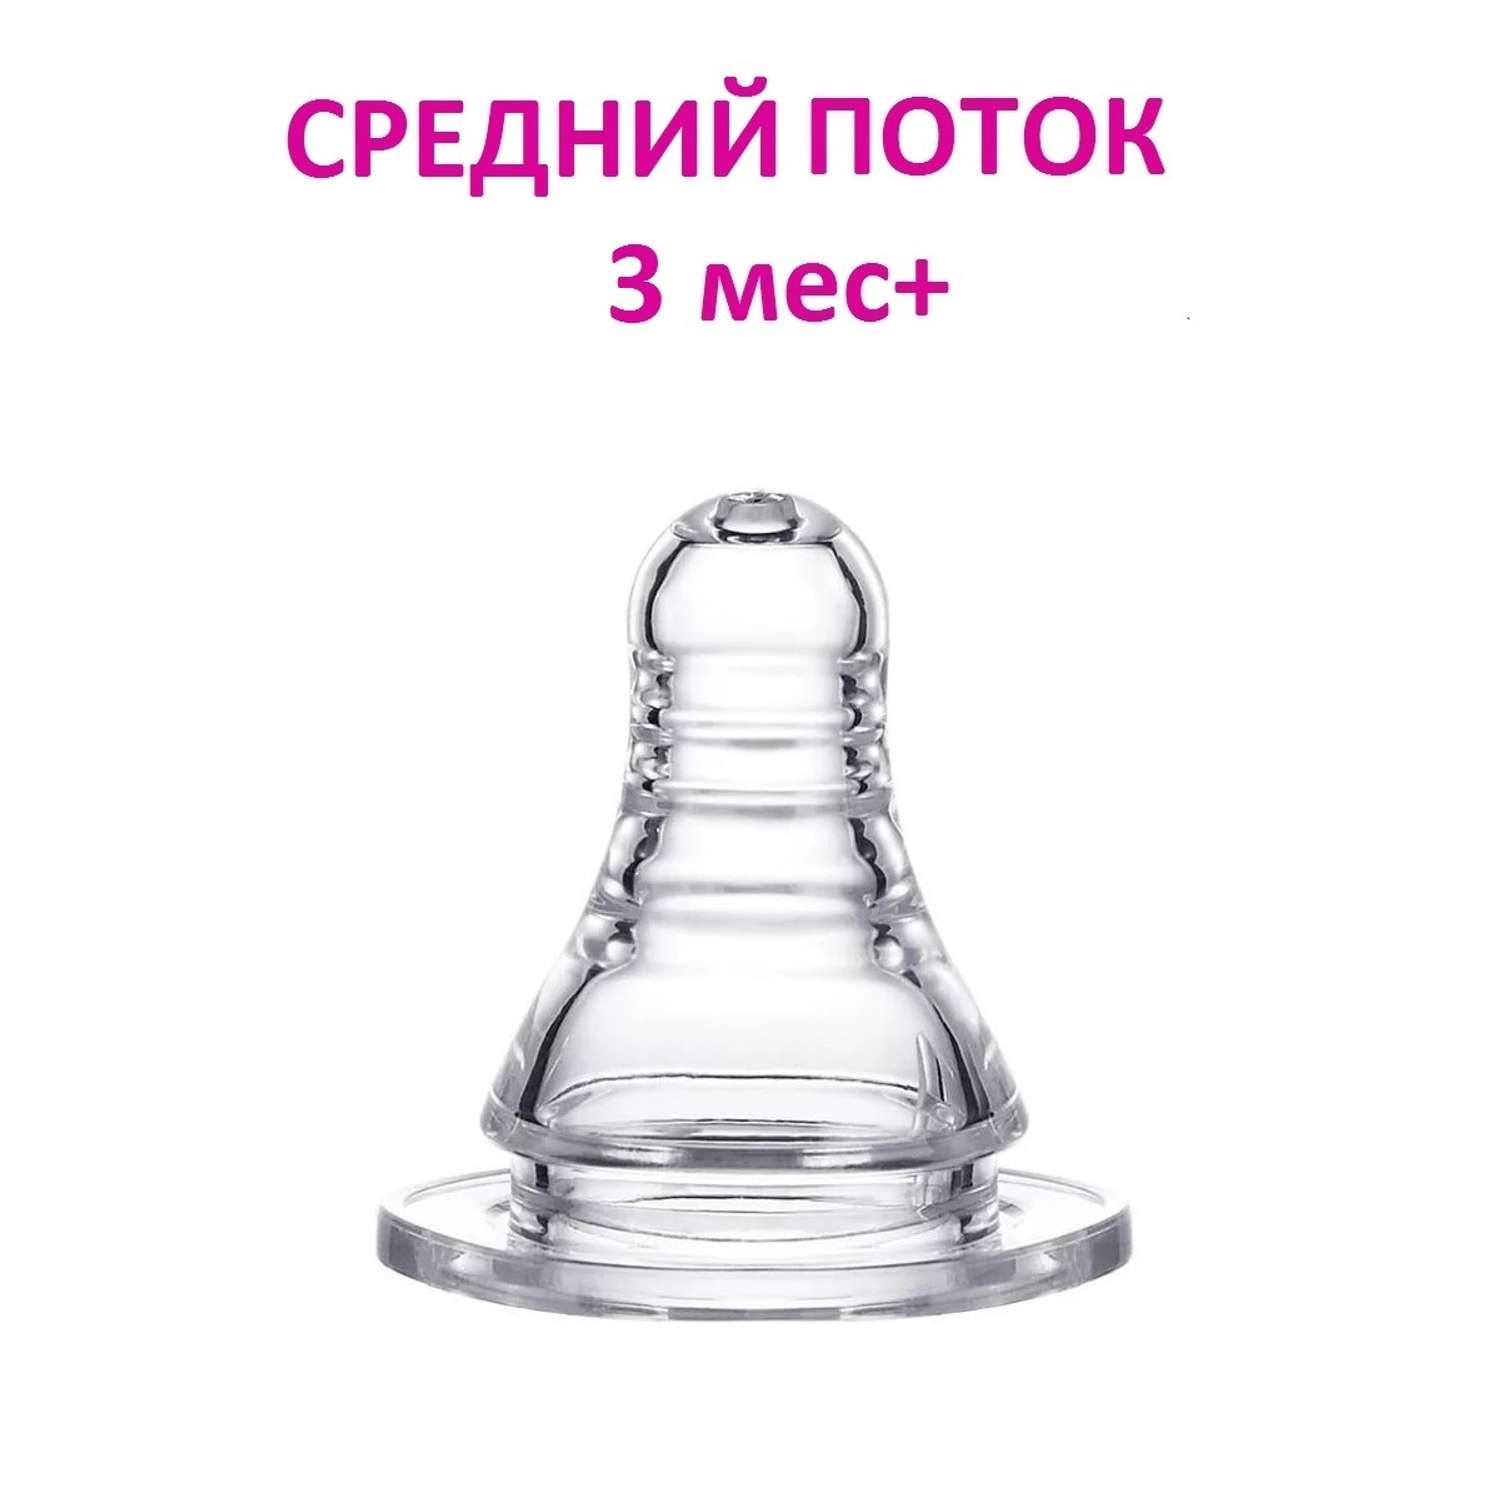 Соска для бутылочки NDCG со средним потоком mother care 3 мес+ 1 шт - фото 1